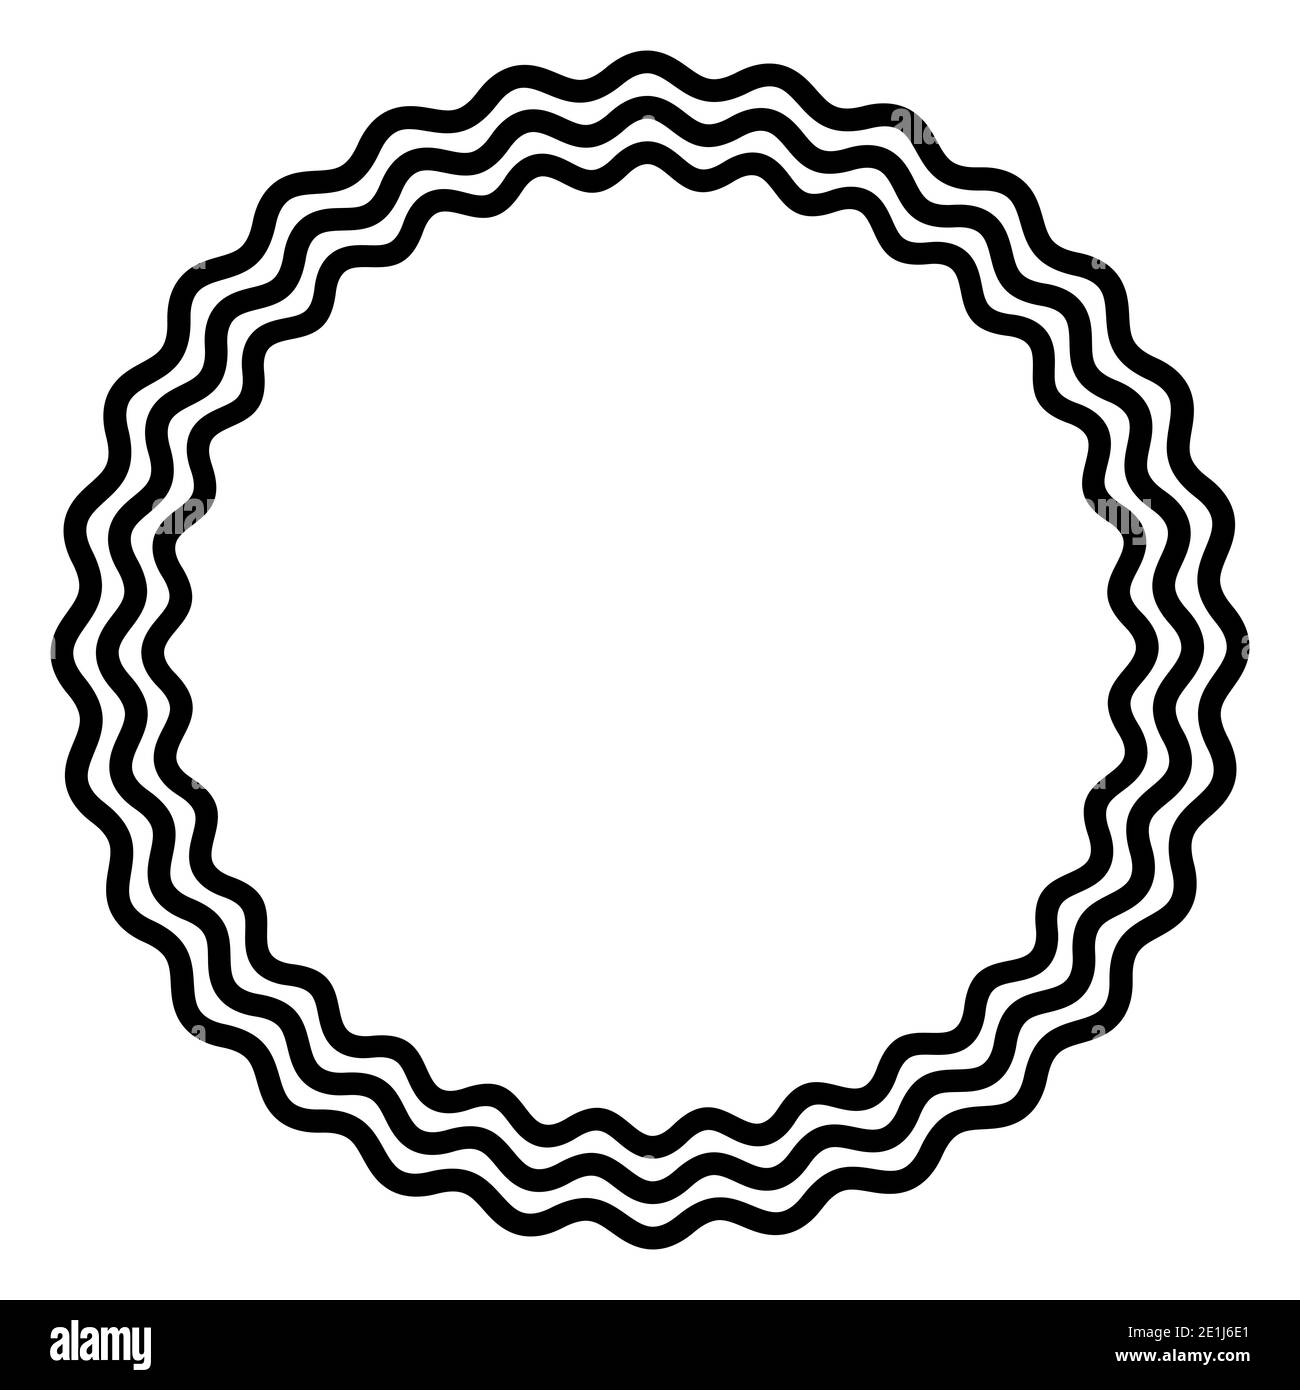 Trois lignes ondulées en gras formant un cadre de cercle noir. Le cadre du cercle est constitué de trois lignes en serpentin noires. Cadre circulaire en forme de serpent, encadrement décoratif. Banque D'Images